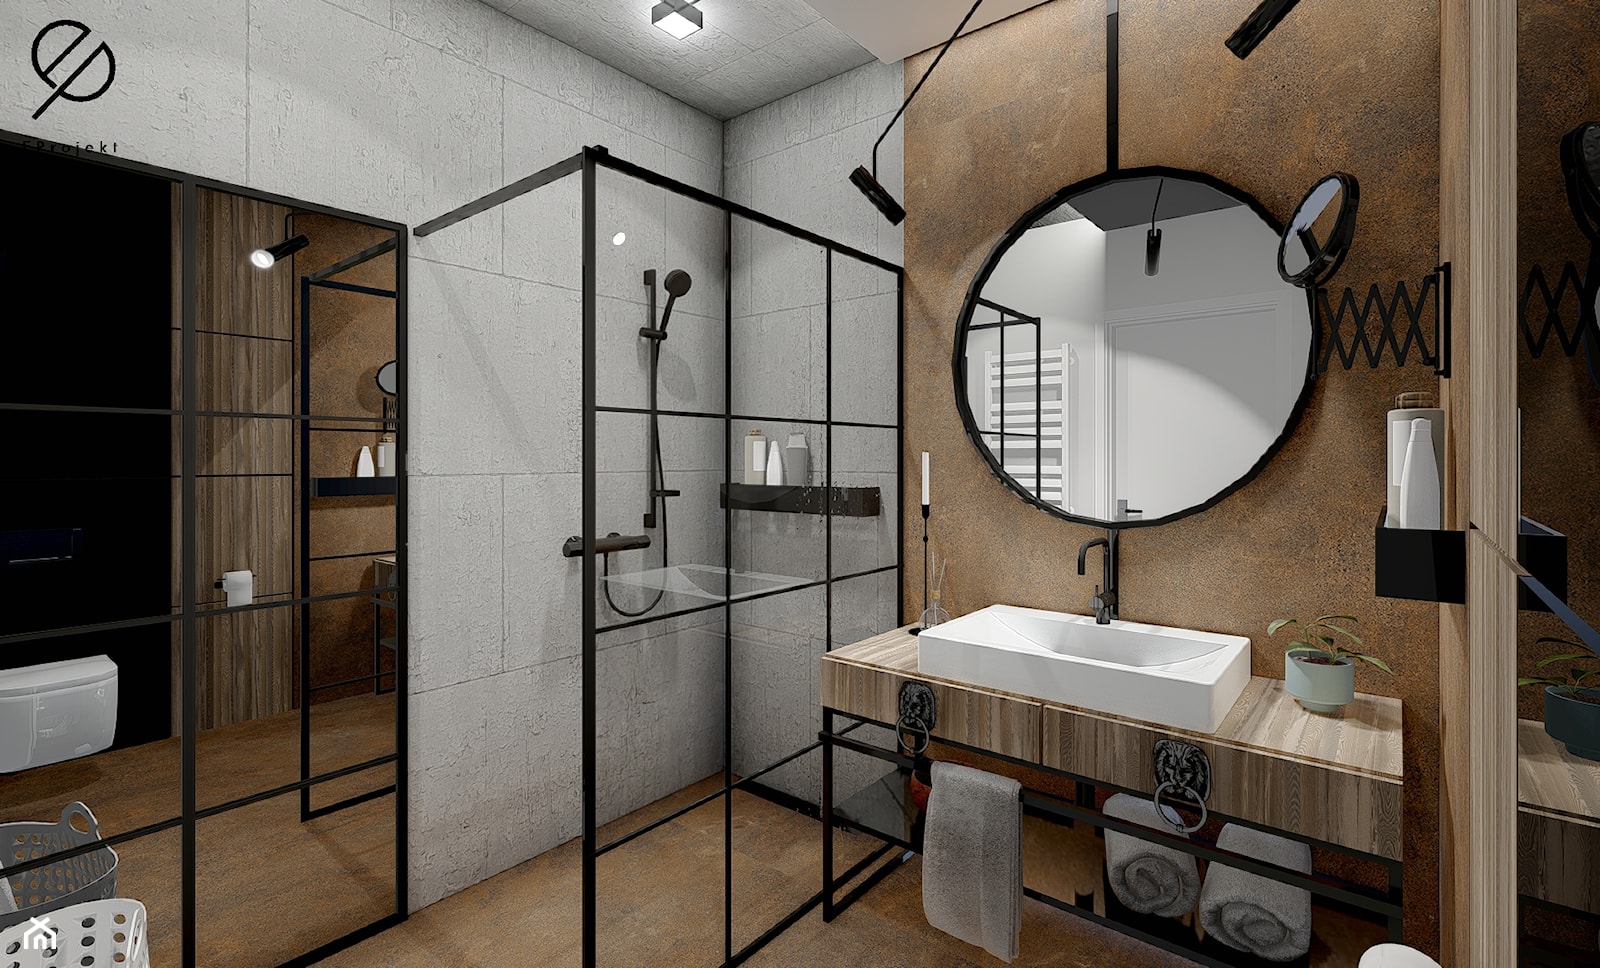 Industrialna łazienka - zdjęcie od EProjekt - architecture design - Homebook